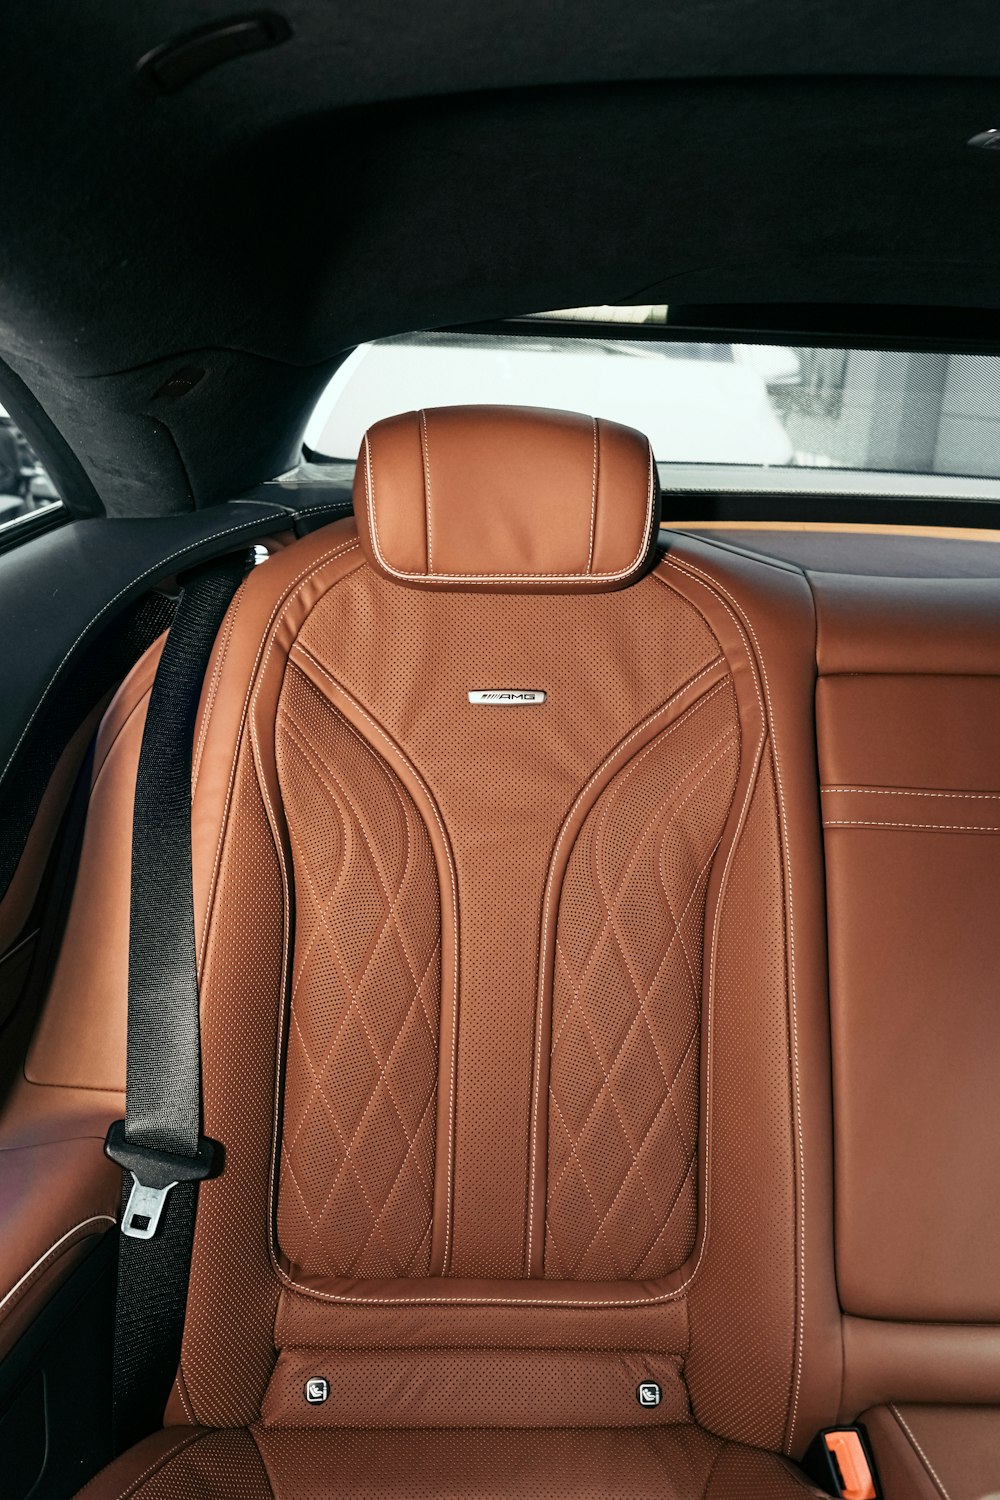 Mochila de cuero marrón en el asiento del coche